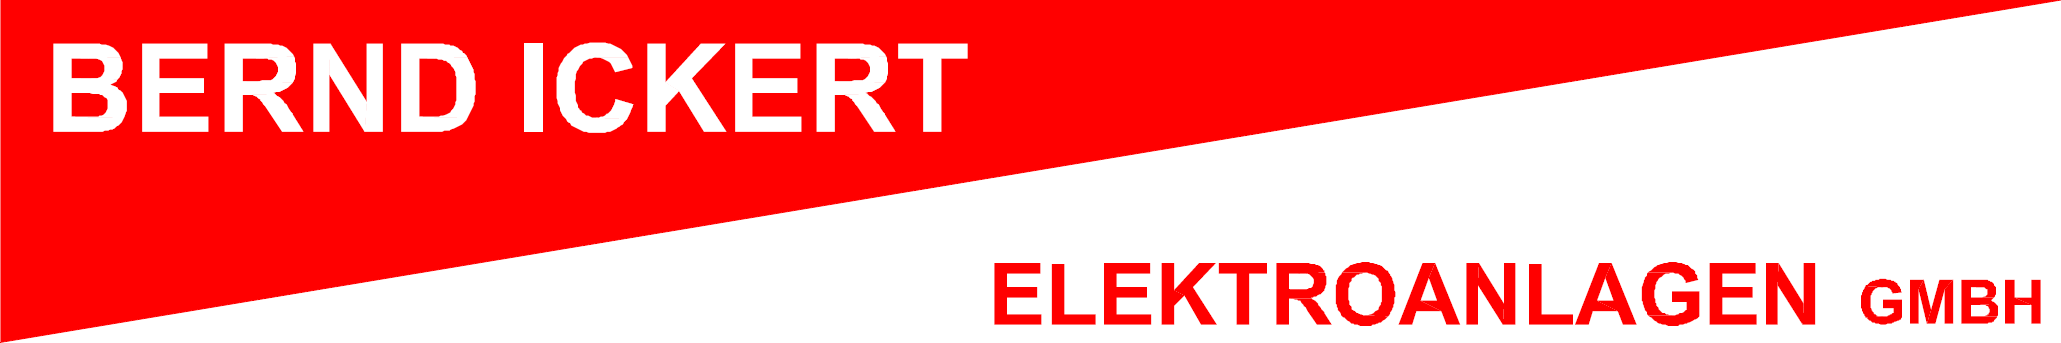 Bernd Ickert Elektroanlagen GmbH